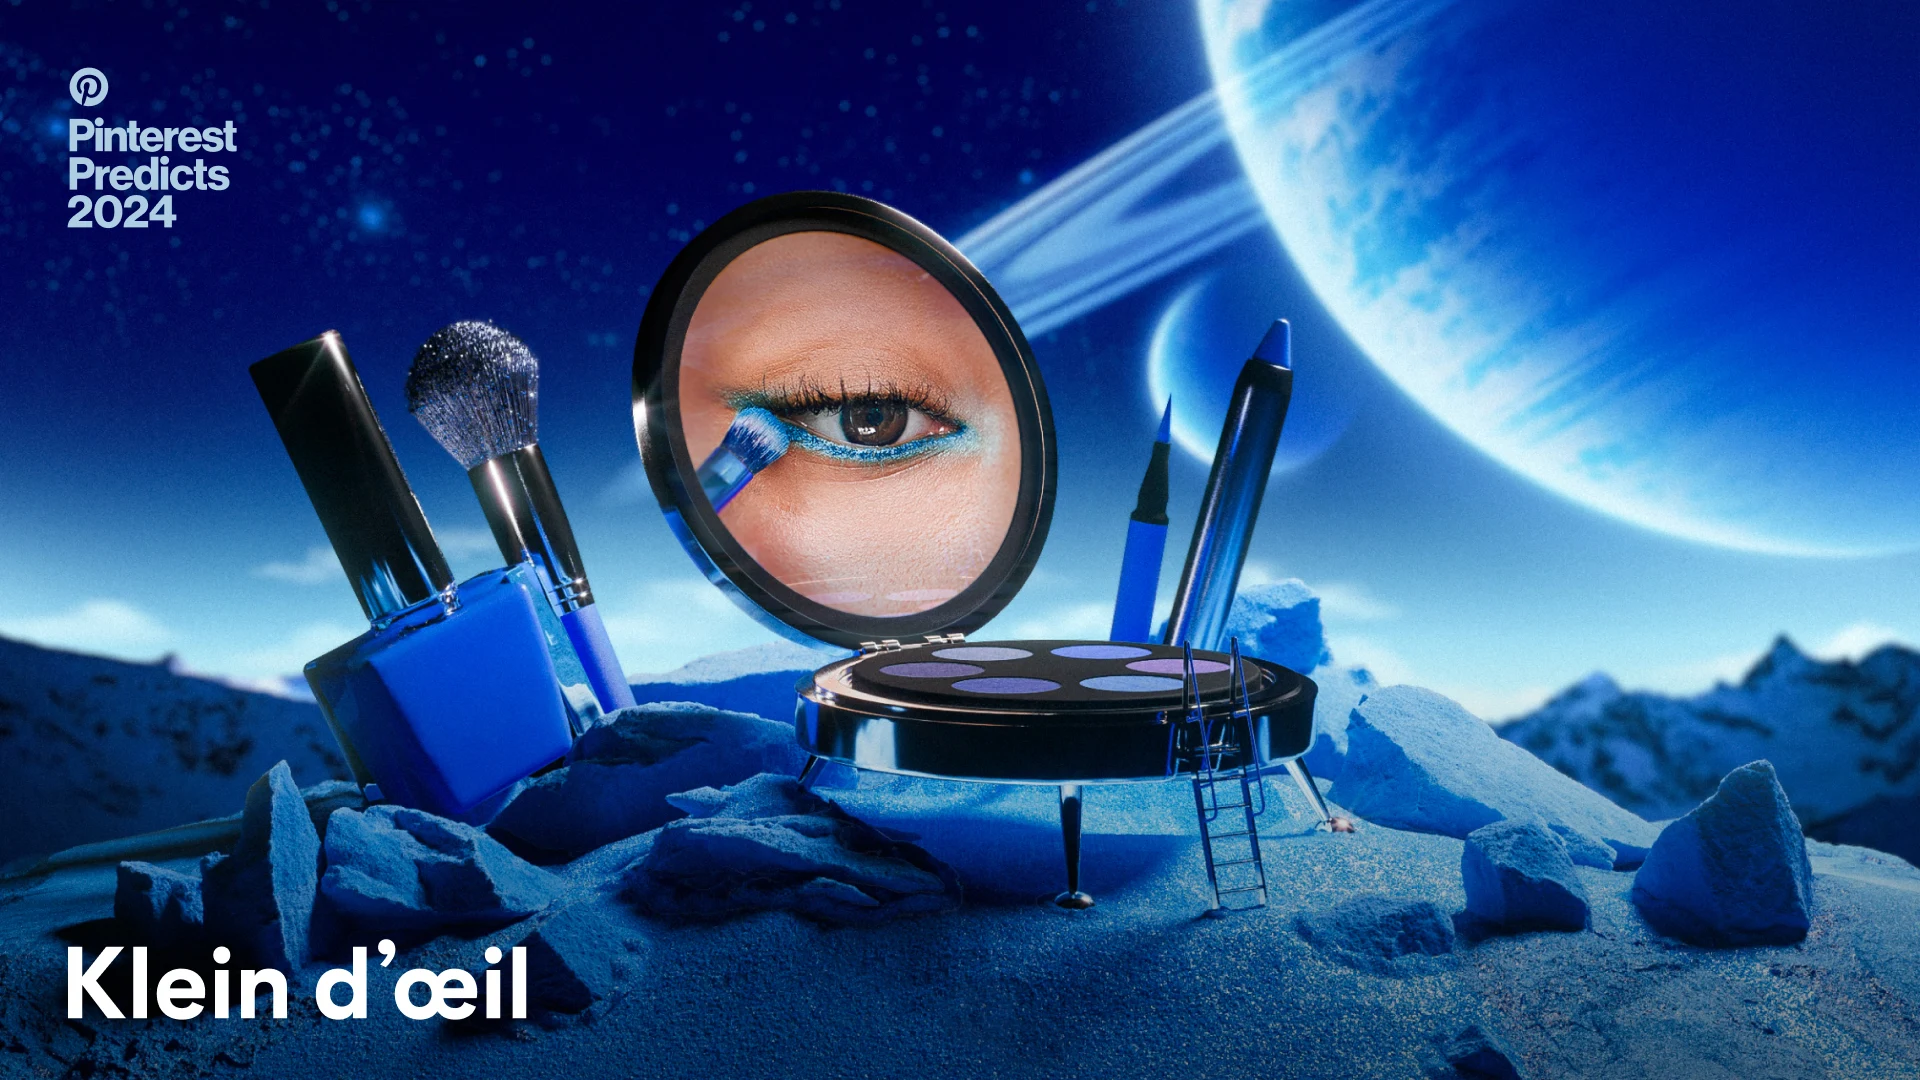 lors d'un alunissage miniature, une palette pour les yeux est le vaisseau spatial et révèle un maquillage pour les yeux bleu, côte à côte avec des liners, un pinceau et du vernis à ongles bleus